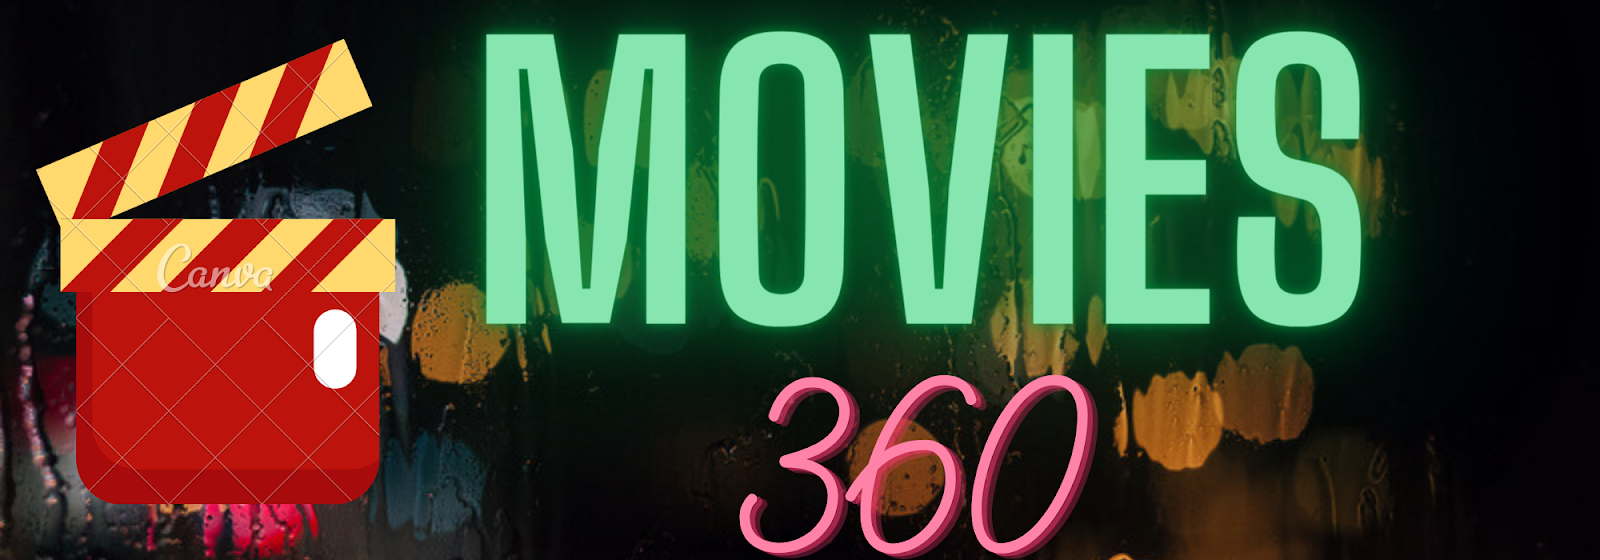 Movies 360